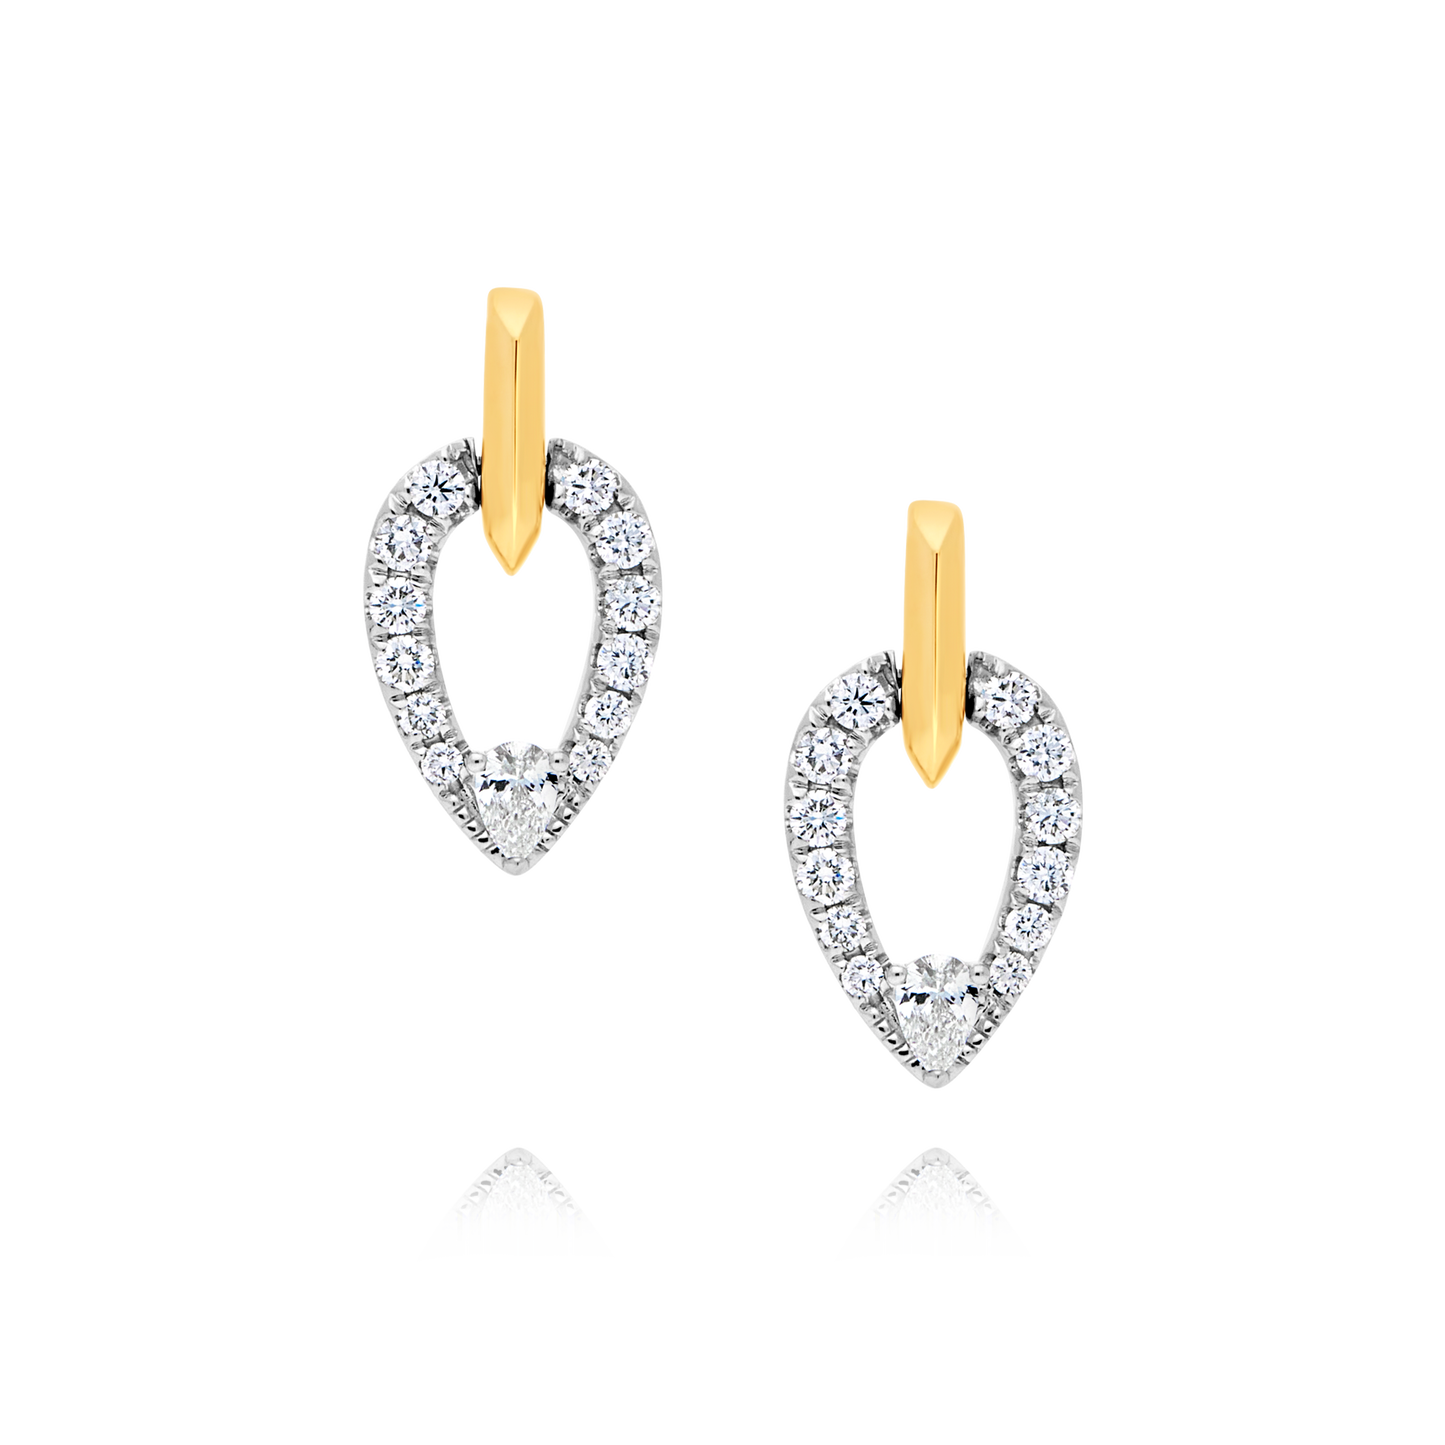 18 Carat Pear Shaped Diamond Earrings